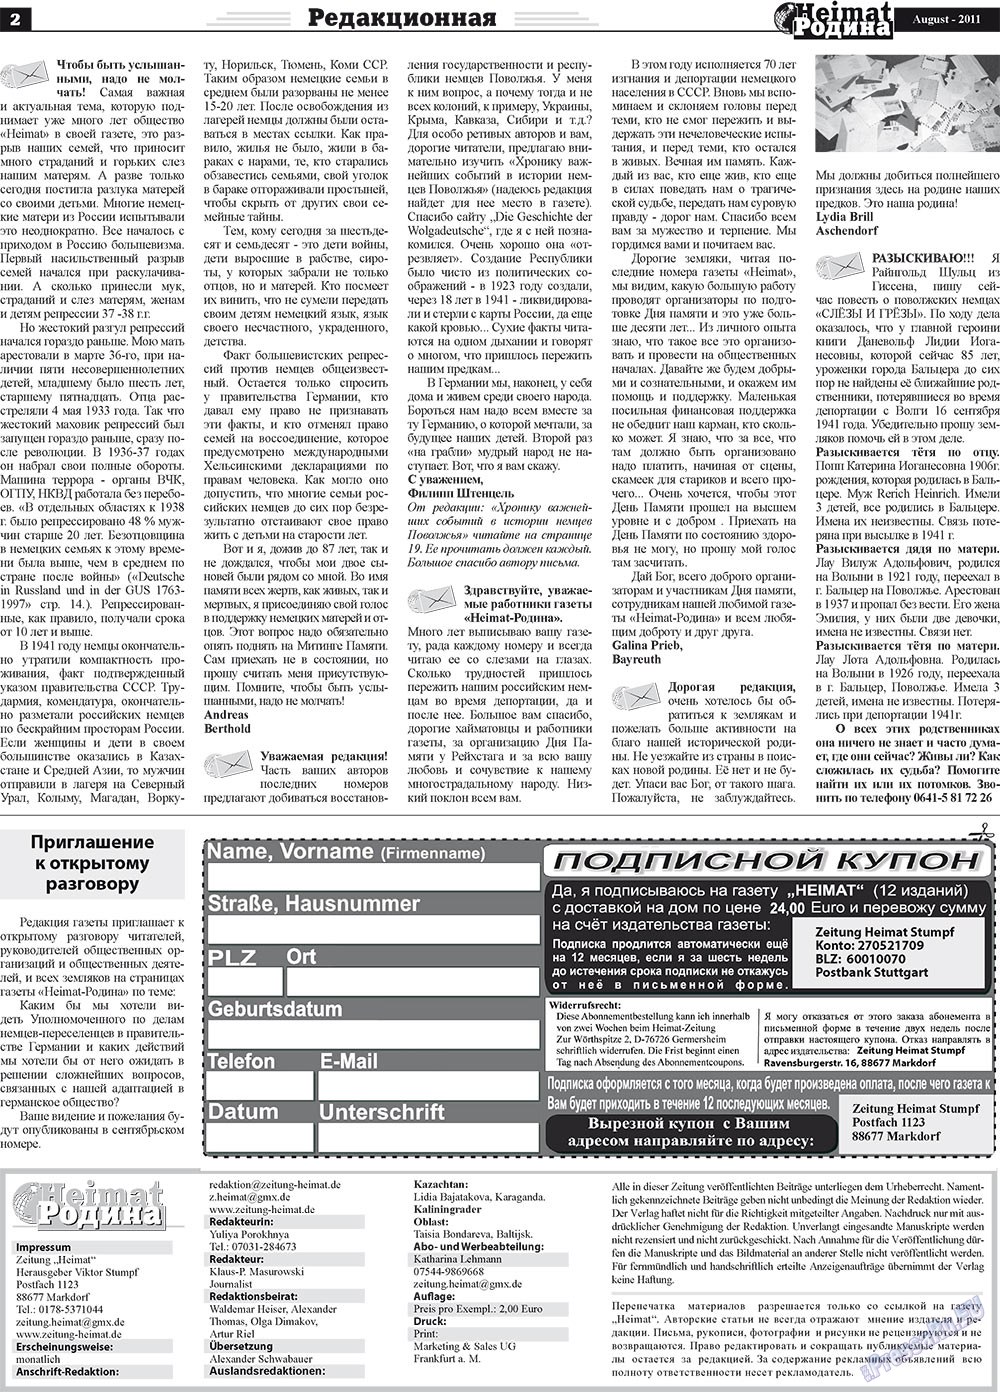 Heimat-Родина (газета). 2011 год, номер 8, стр. 2